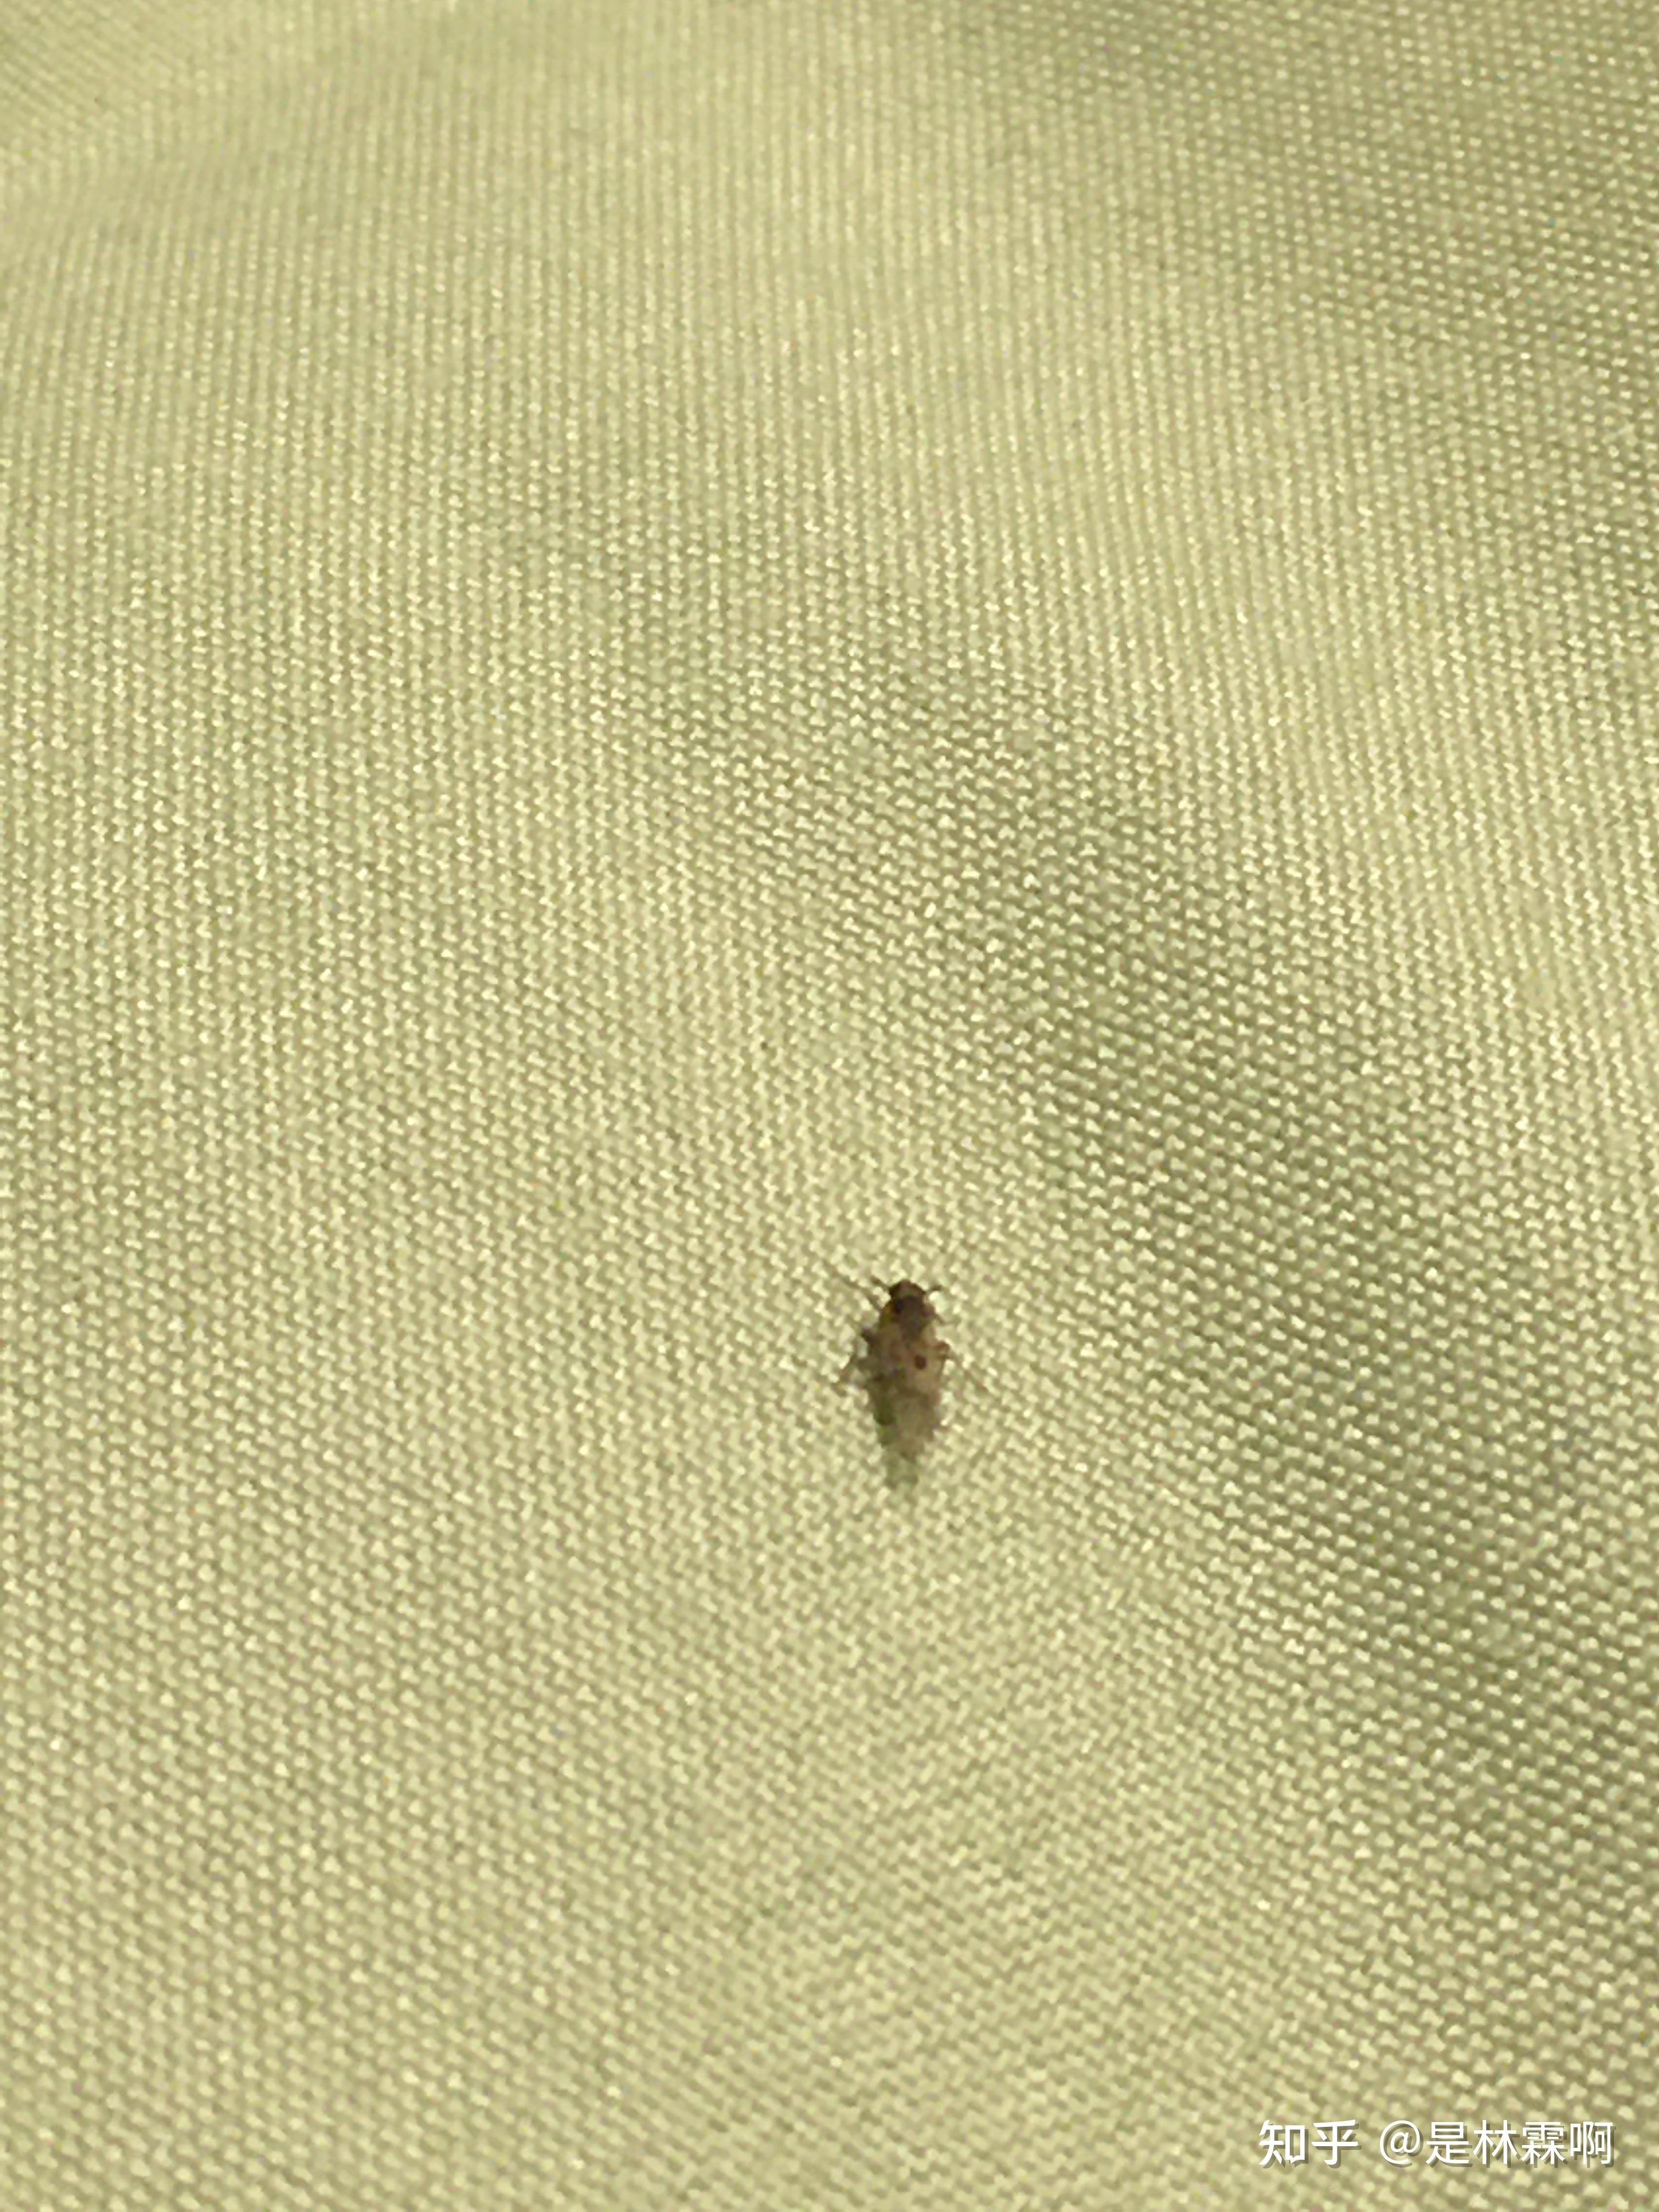 床上有很多虫子不咬人请问是啥虫有啥问题么